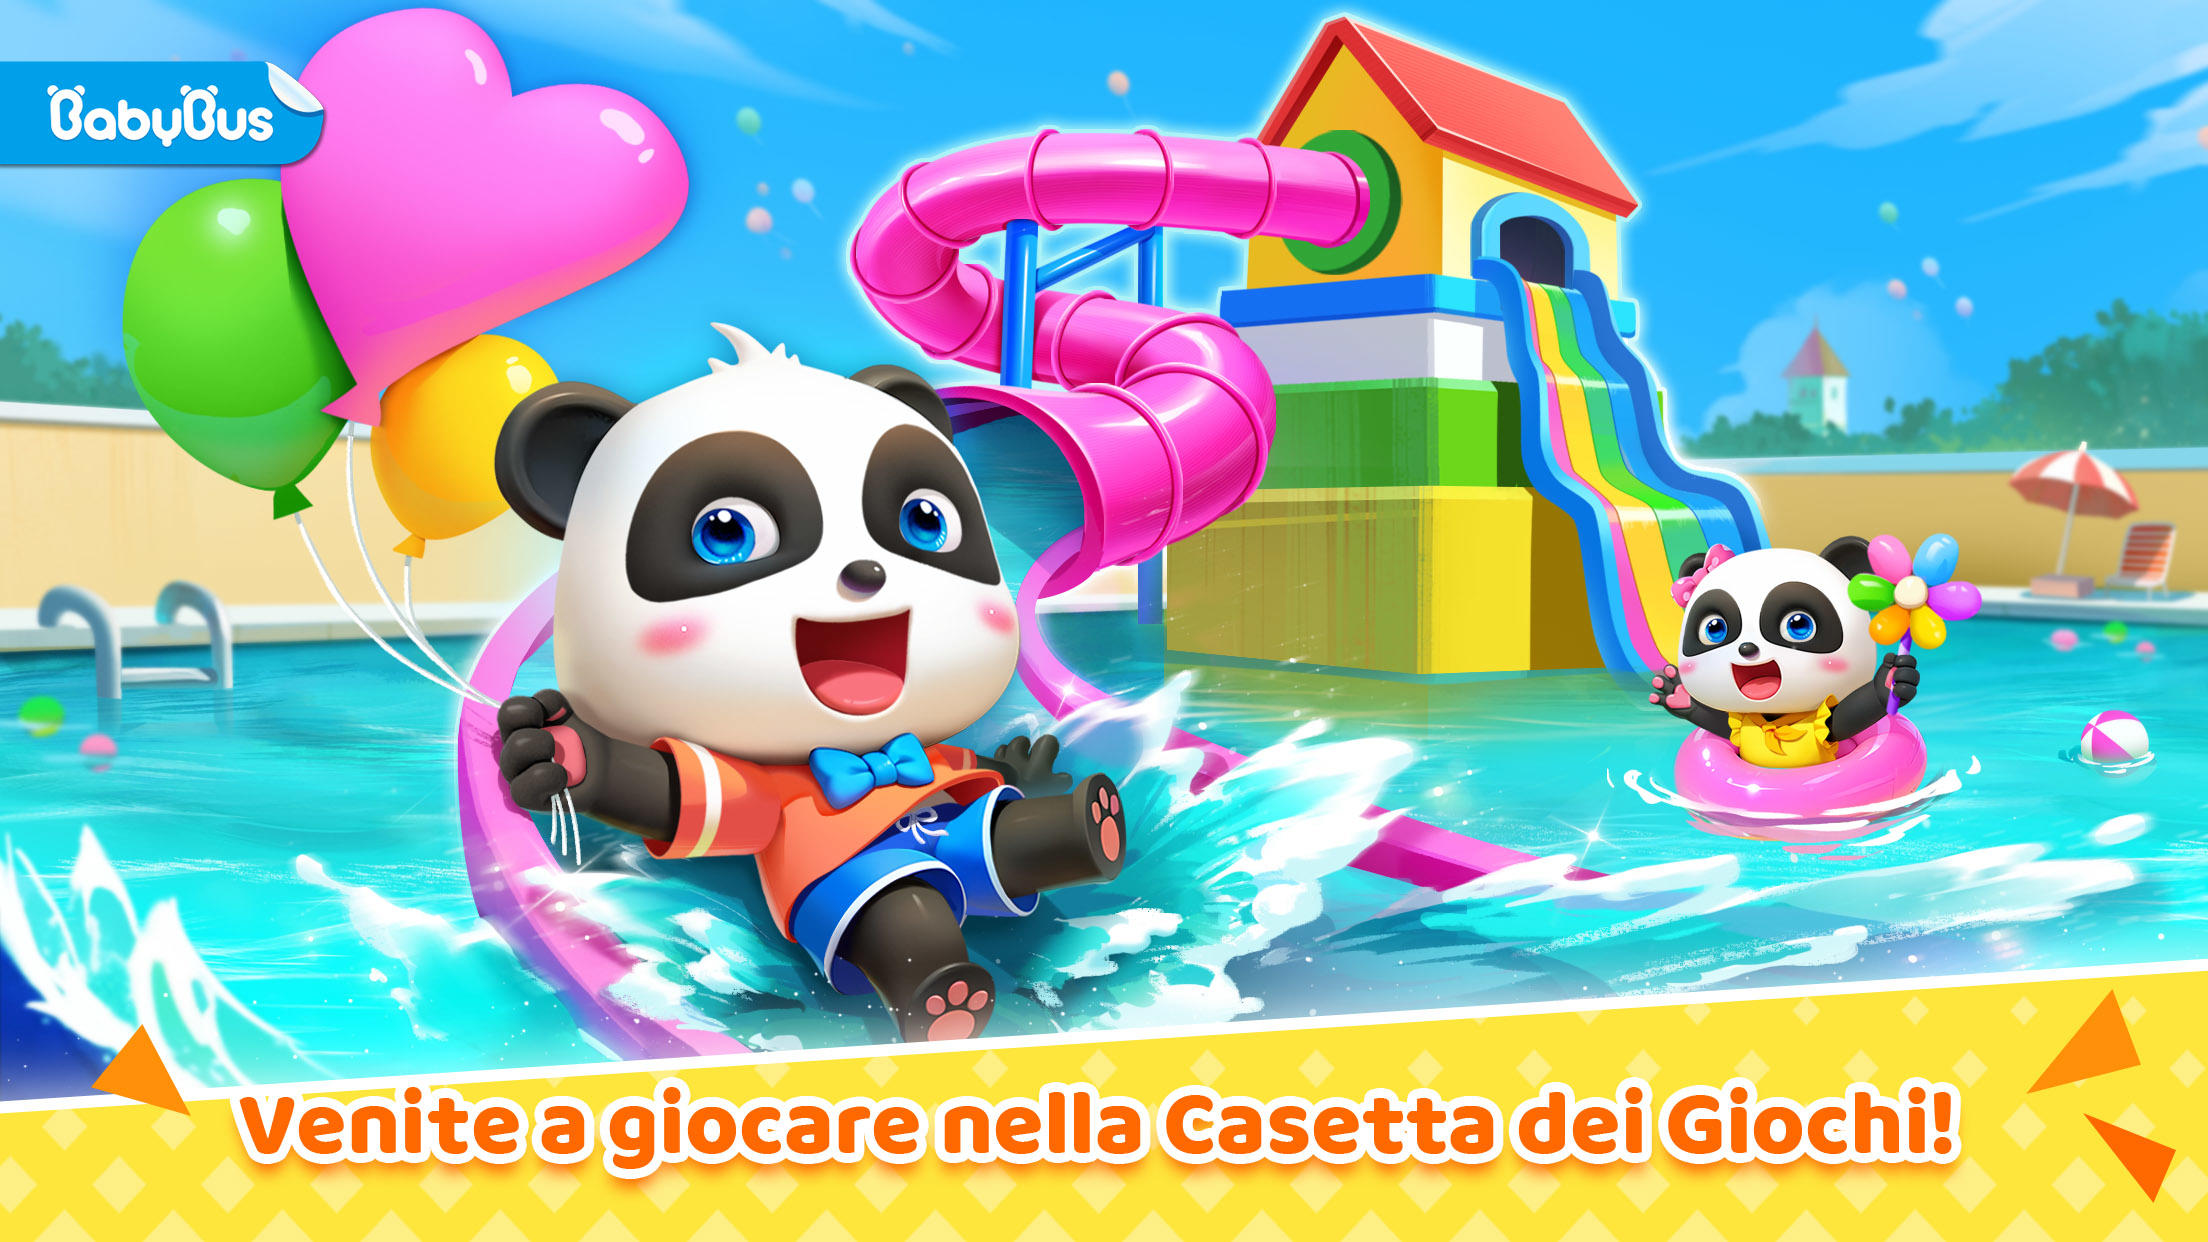 Screenshot 1 of Casa Giochi Baby Panda 8.68.29.66